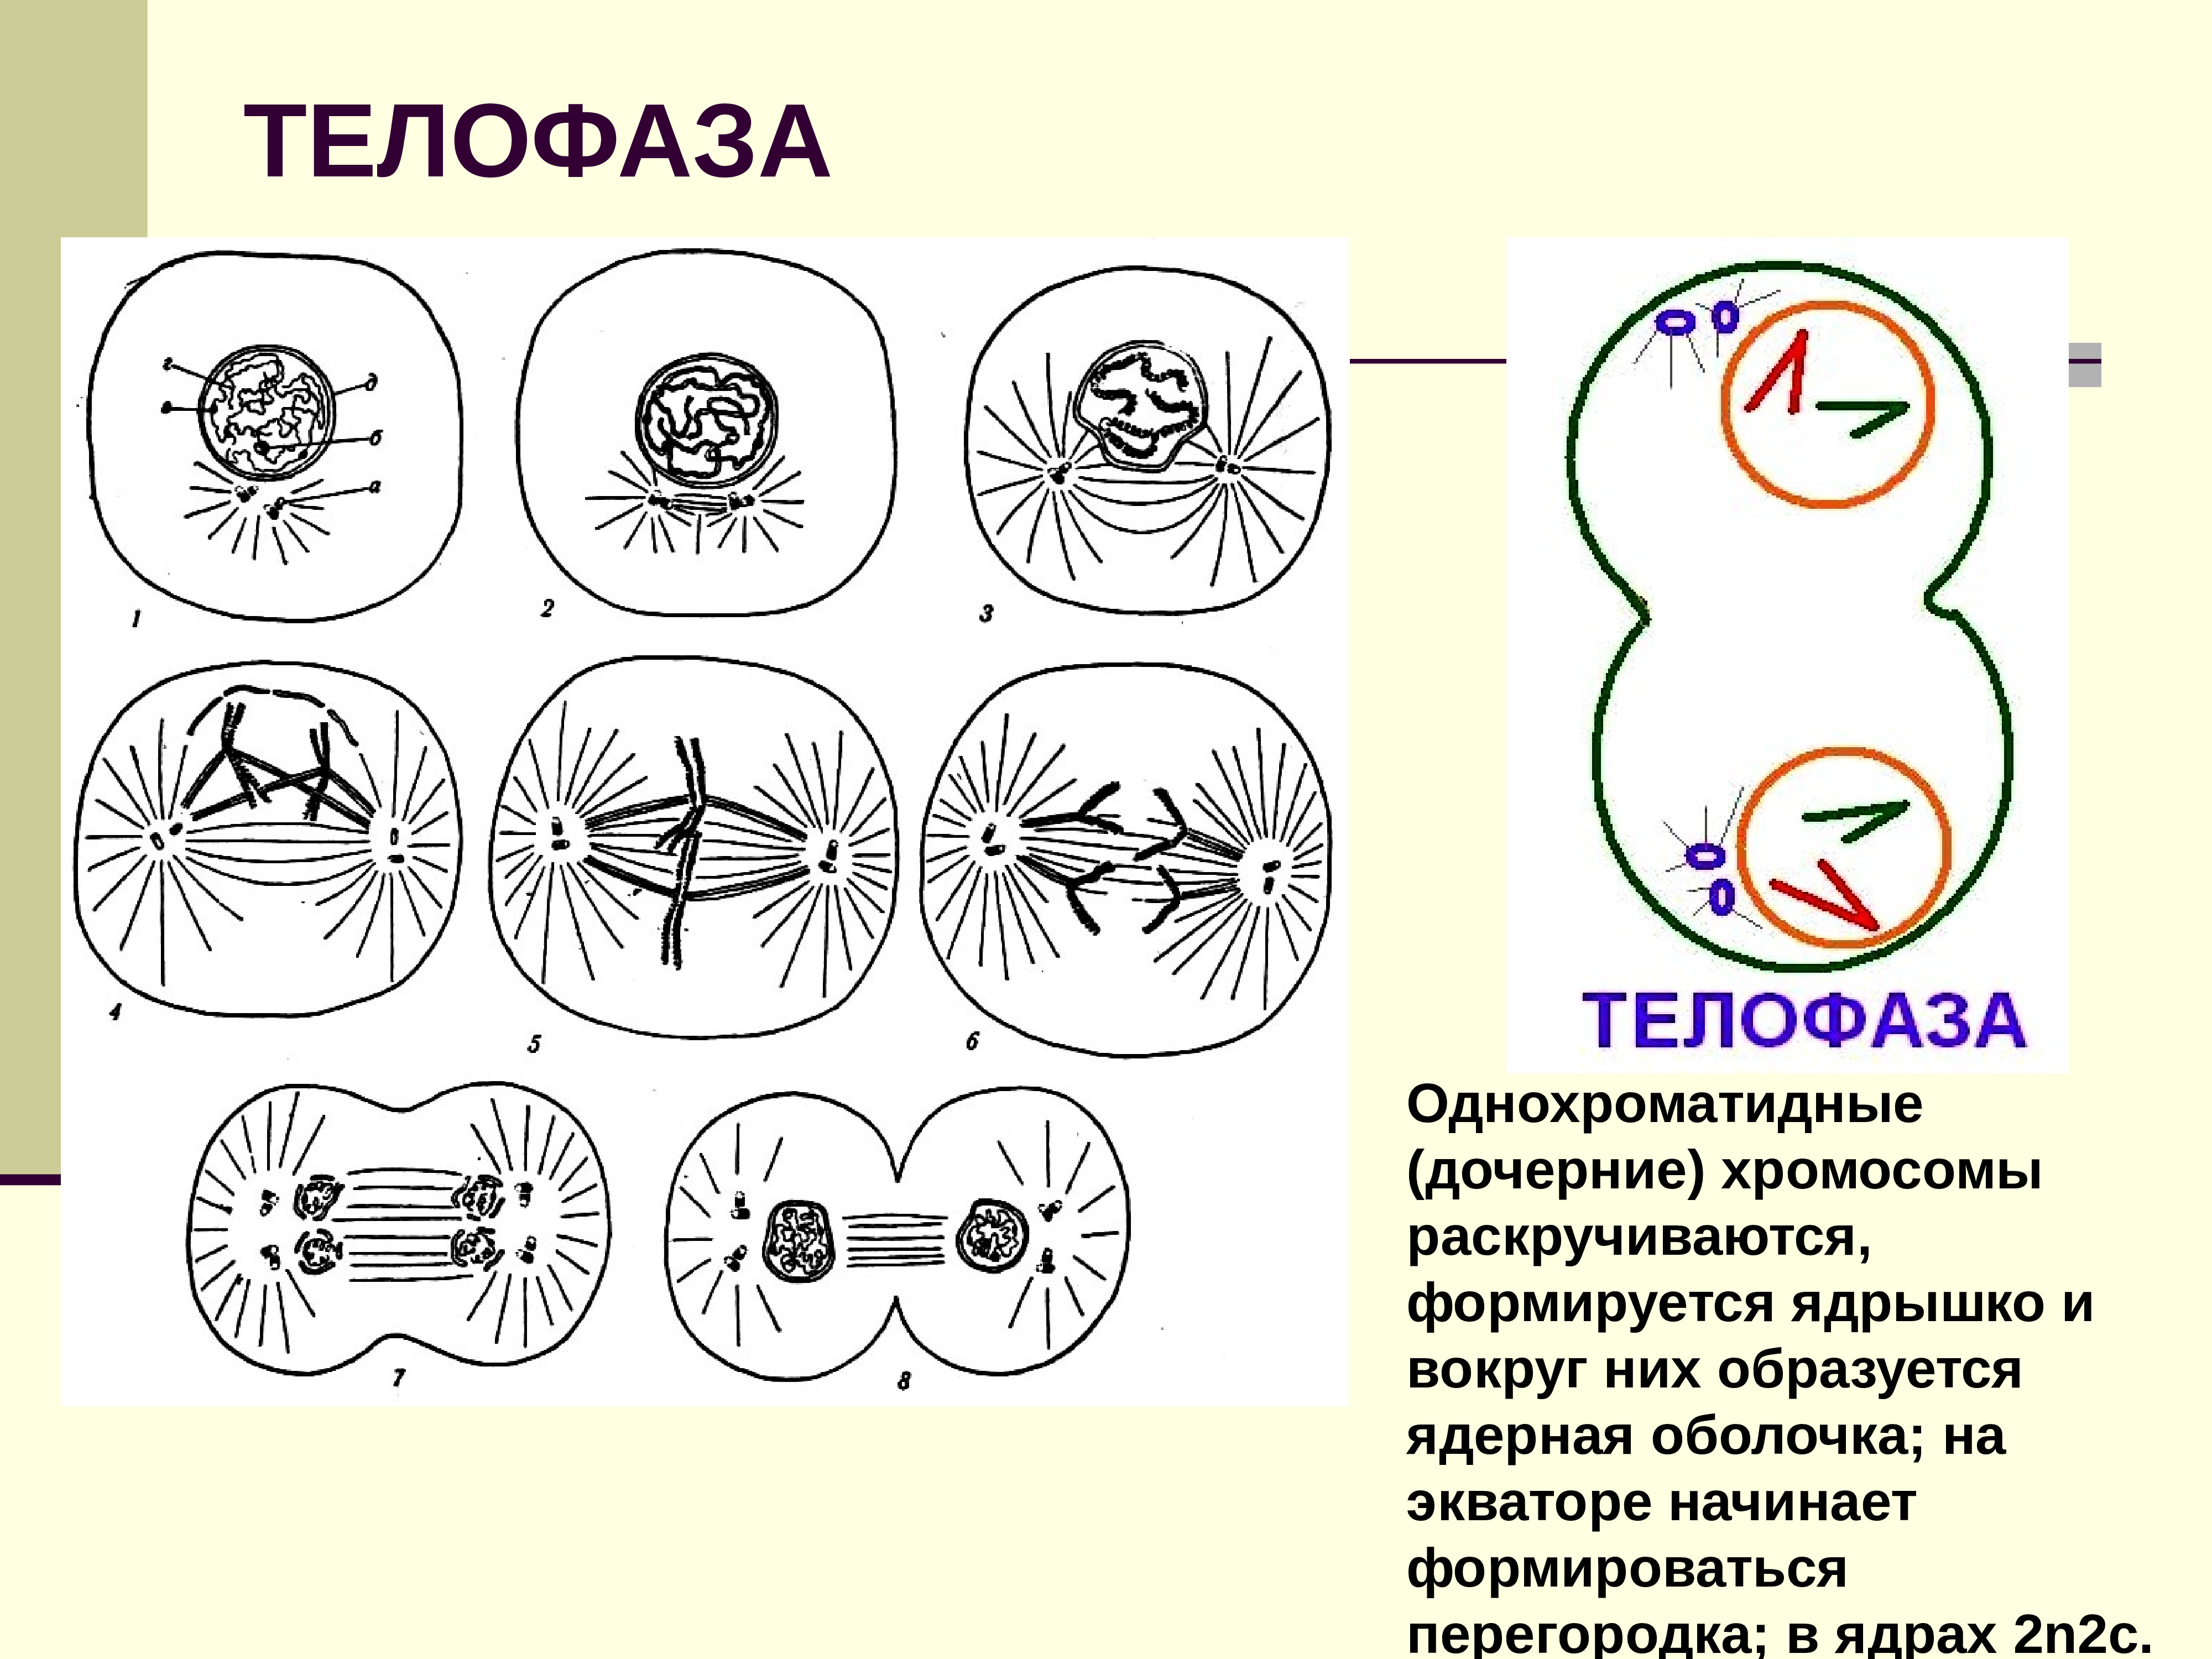 Телофаза мейоза 1 хромосомы однохроматидные